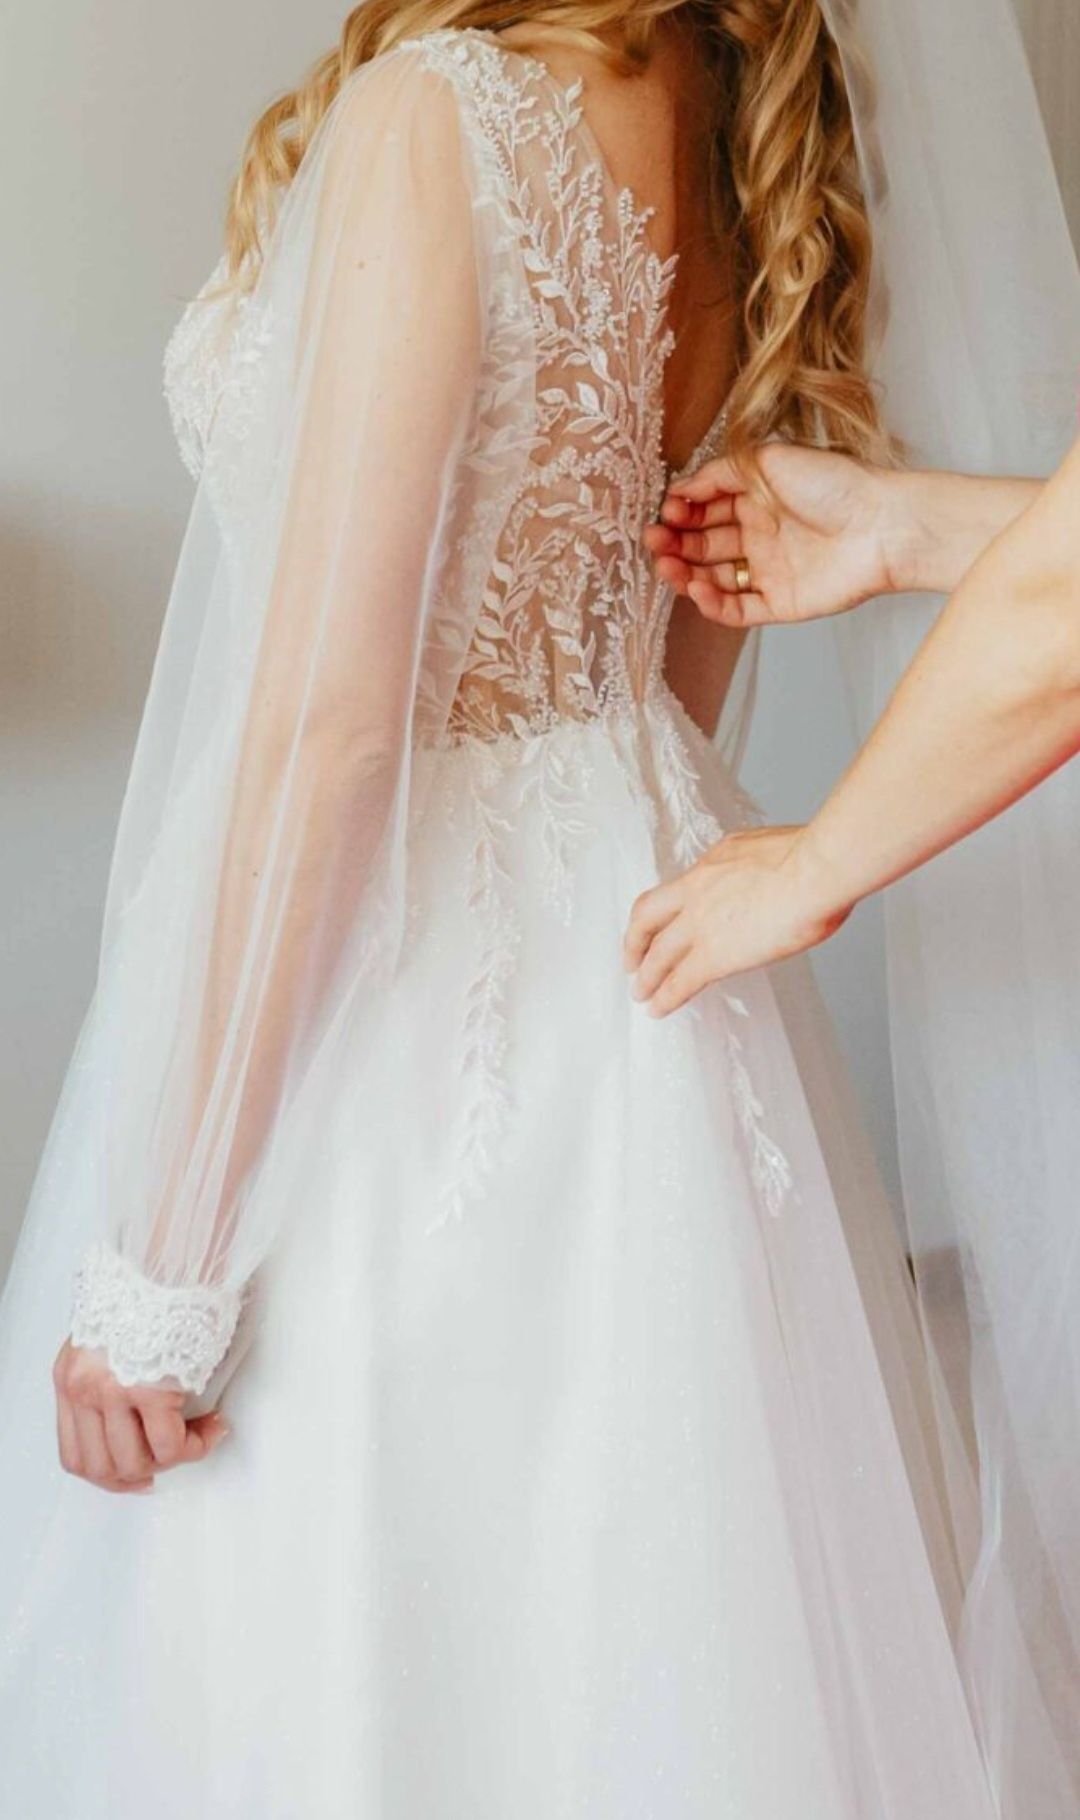 Suknia Ślubna piękna długi rękaw 34 36 s xs tiul